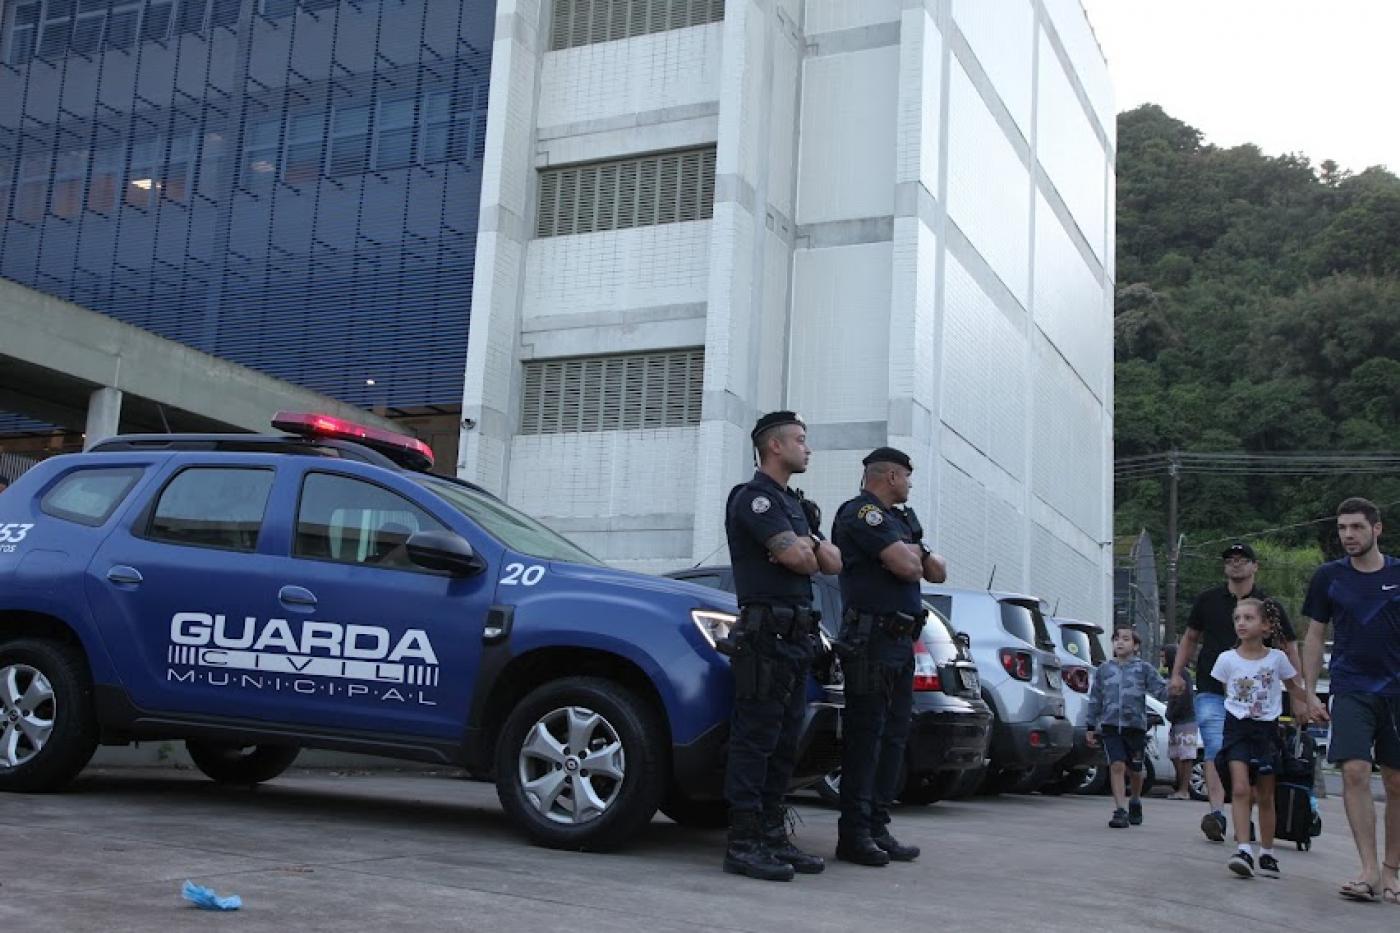 Escolas municipais de Santos terão botão de alerta, seguranças e reforço no monitoramento